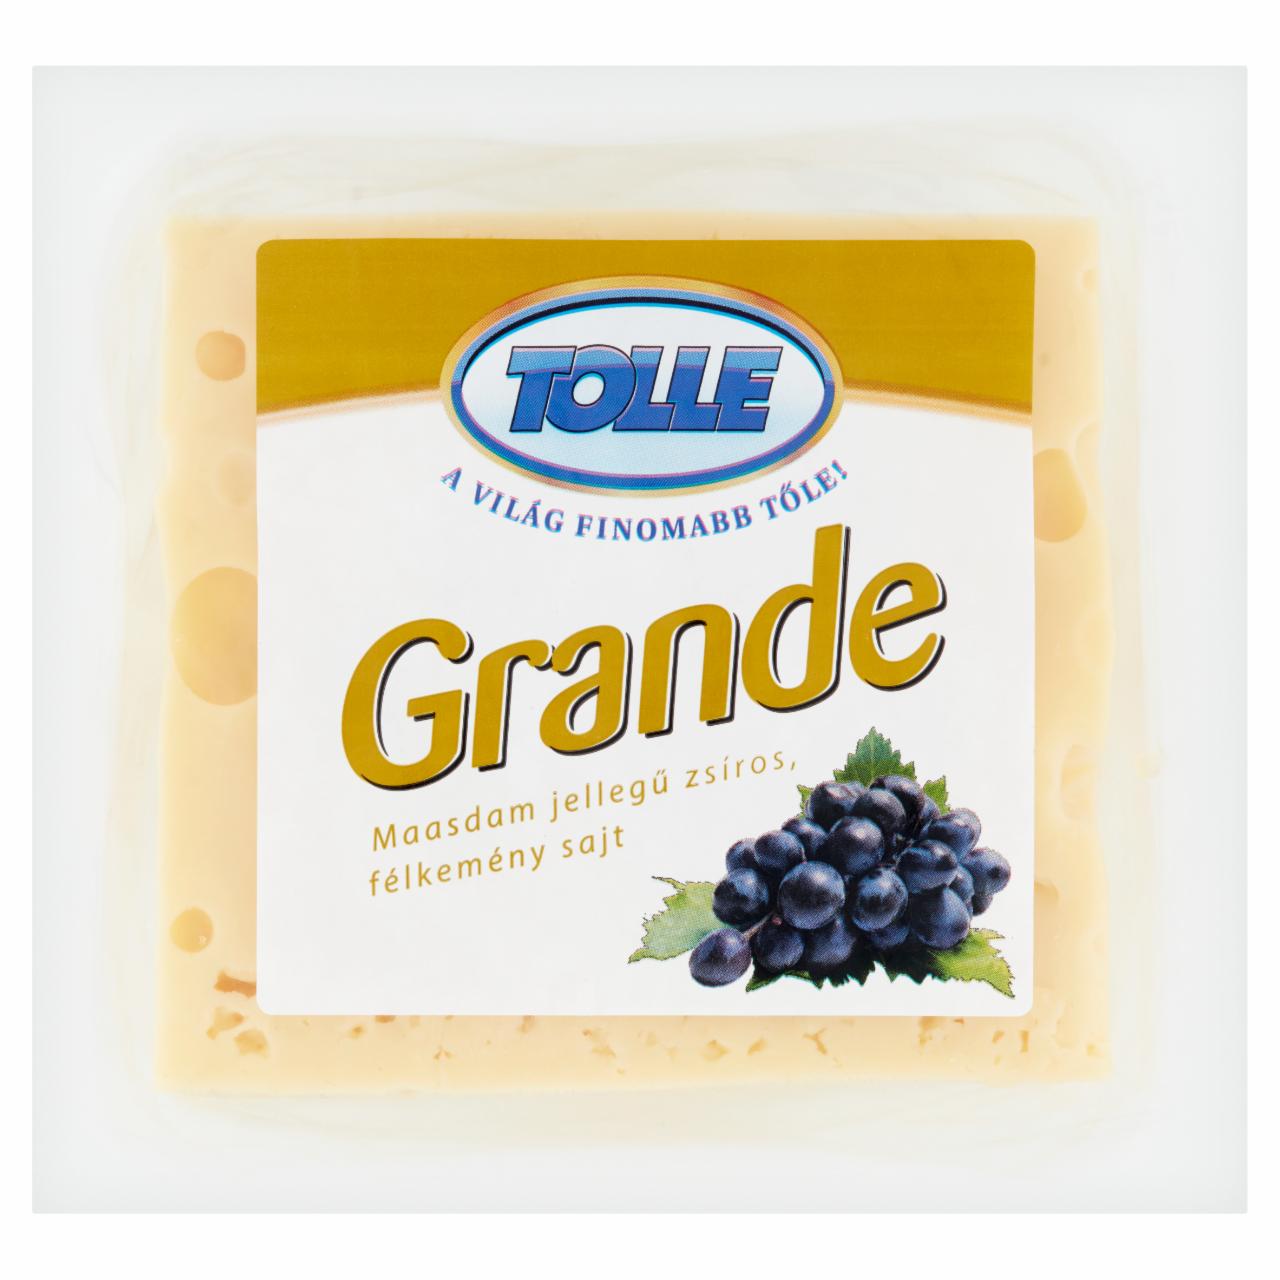 Képek - Tolle Grande Maasdam jellegű zsíros, félkemény, darabolt sajt